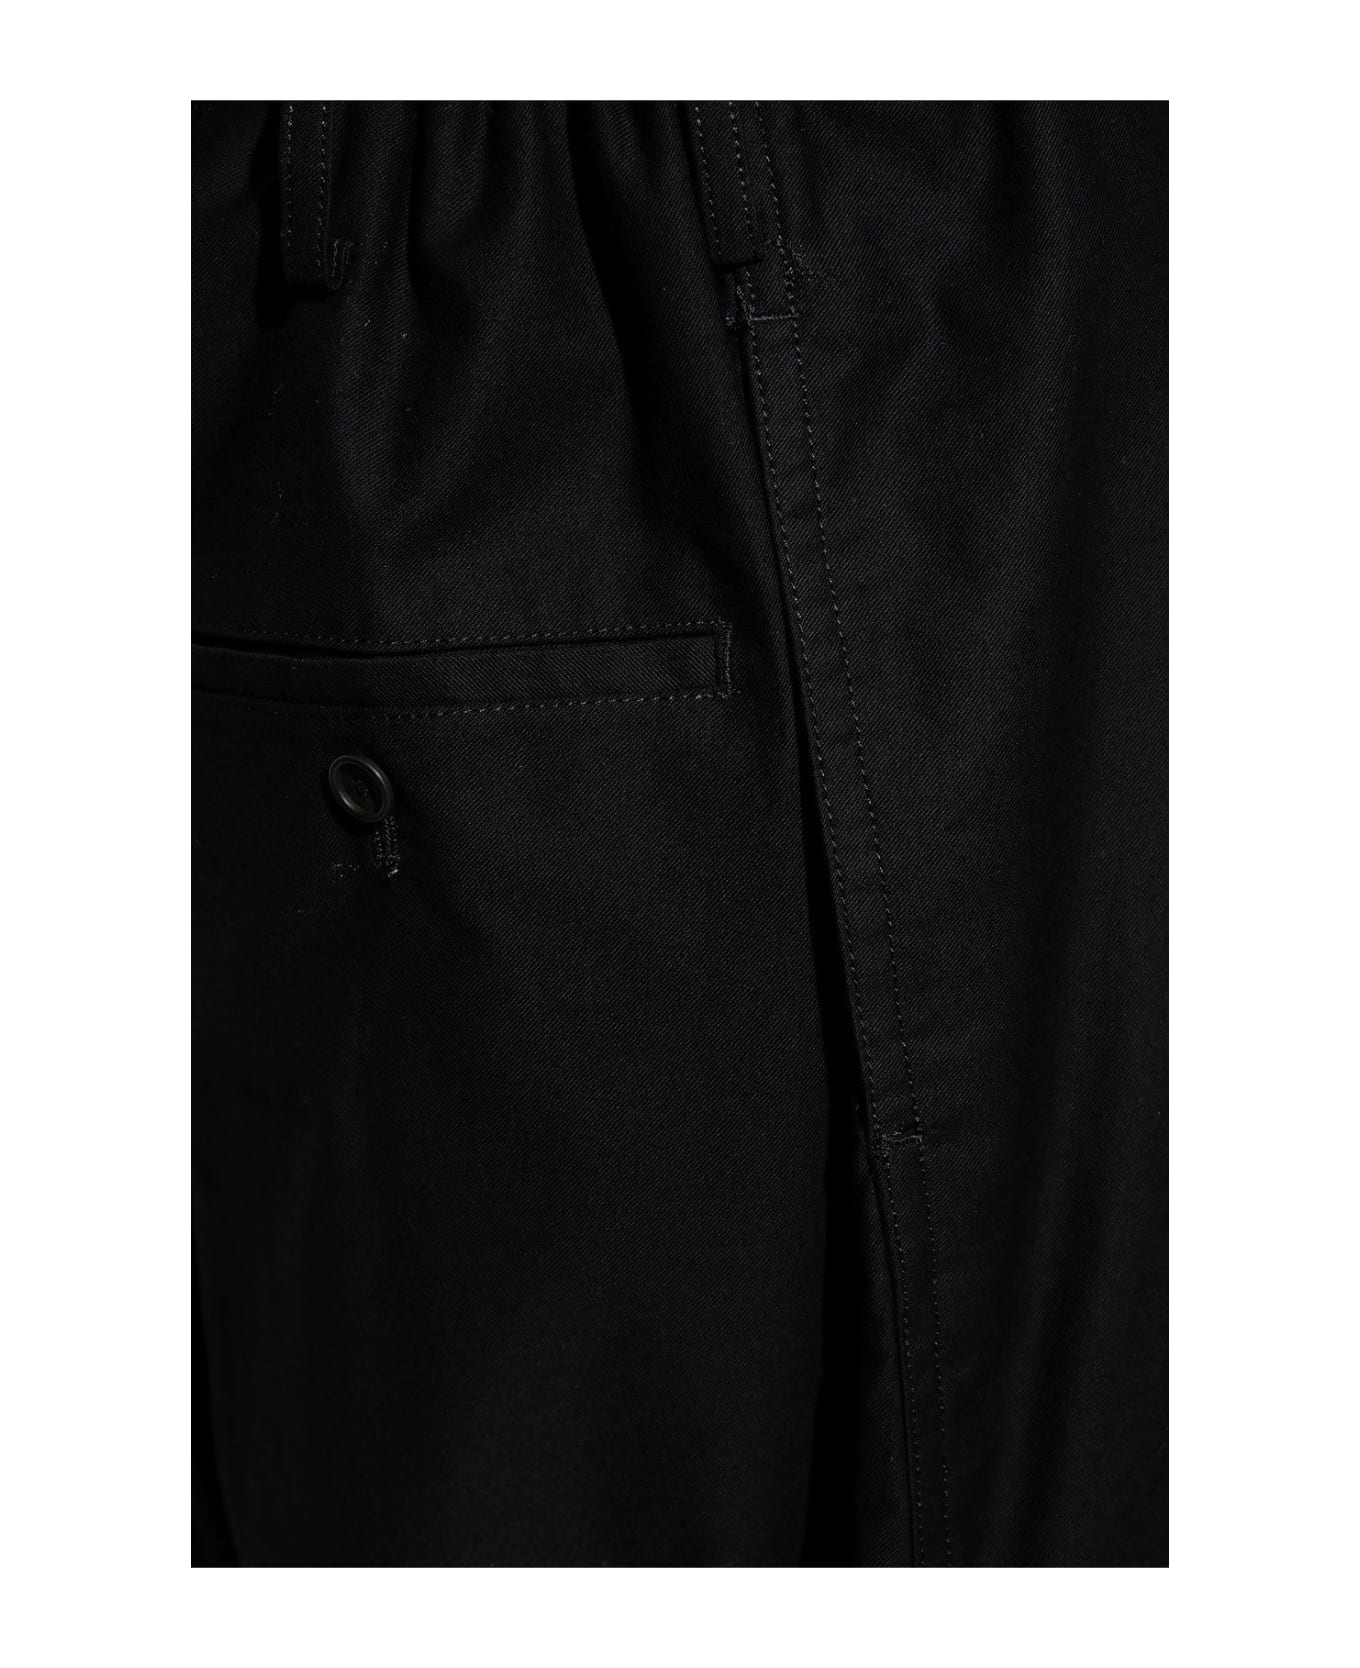 Yohji Yamamoto Relaxed Fitting Trousers - Black